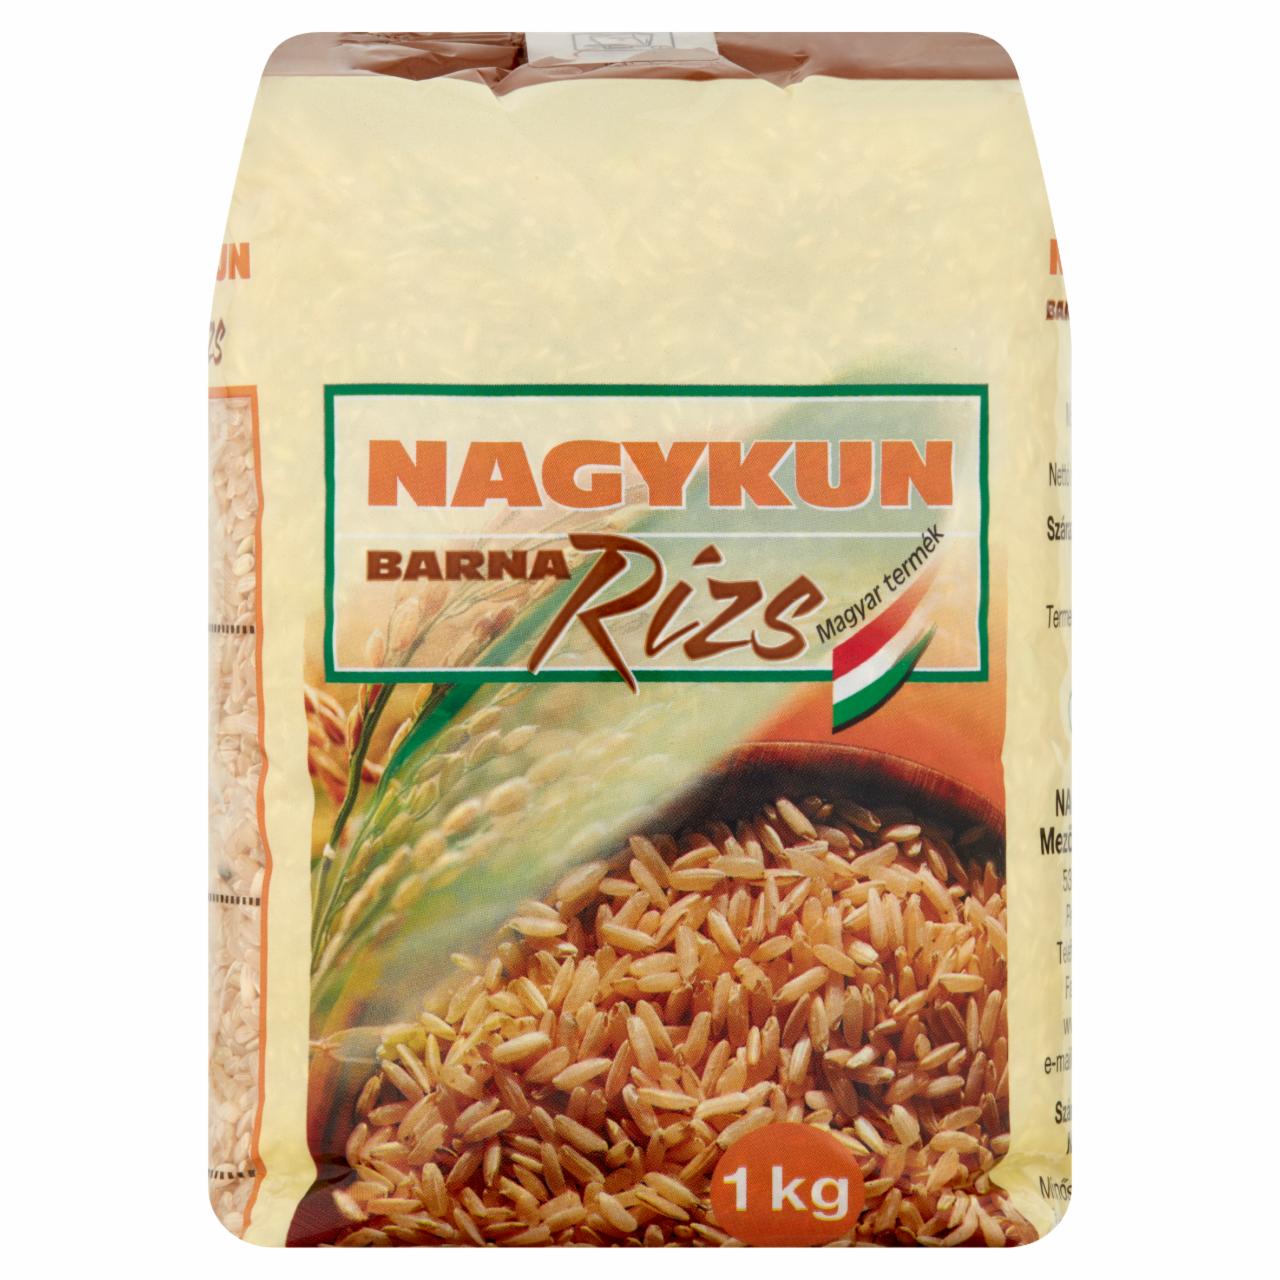 Képek - Nagykun barna rizs 1 kg